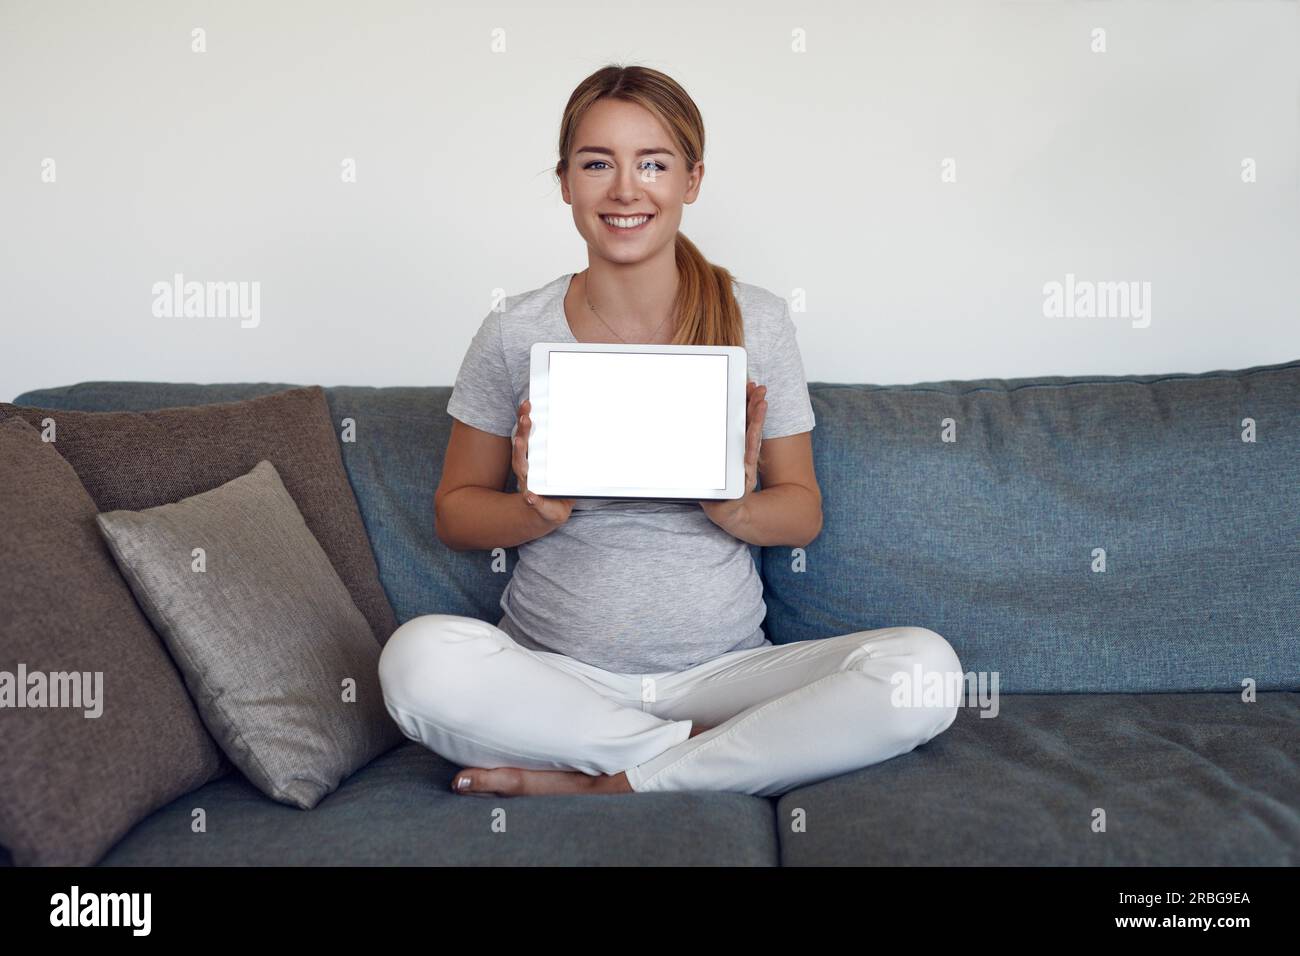 Sorridente attraente vivace giovane donna incinta seduta zampe trasversale su un divano a casa con in mano una tavoletta con schermo vuoto e spazio di copia Foto Stock